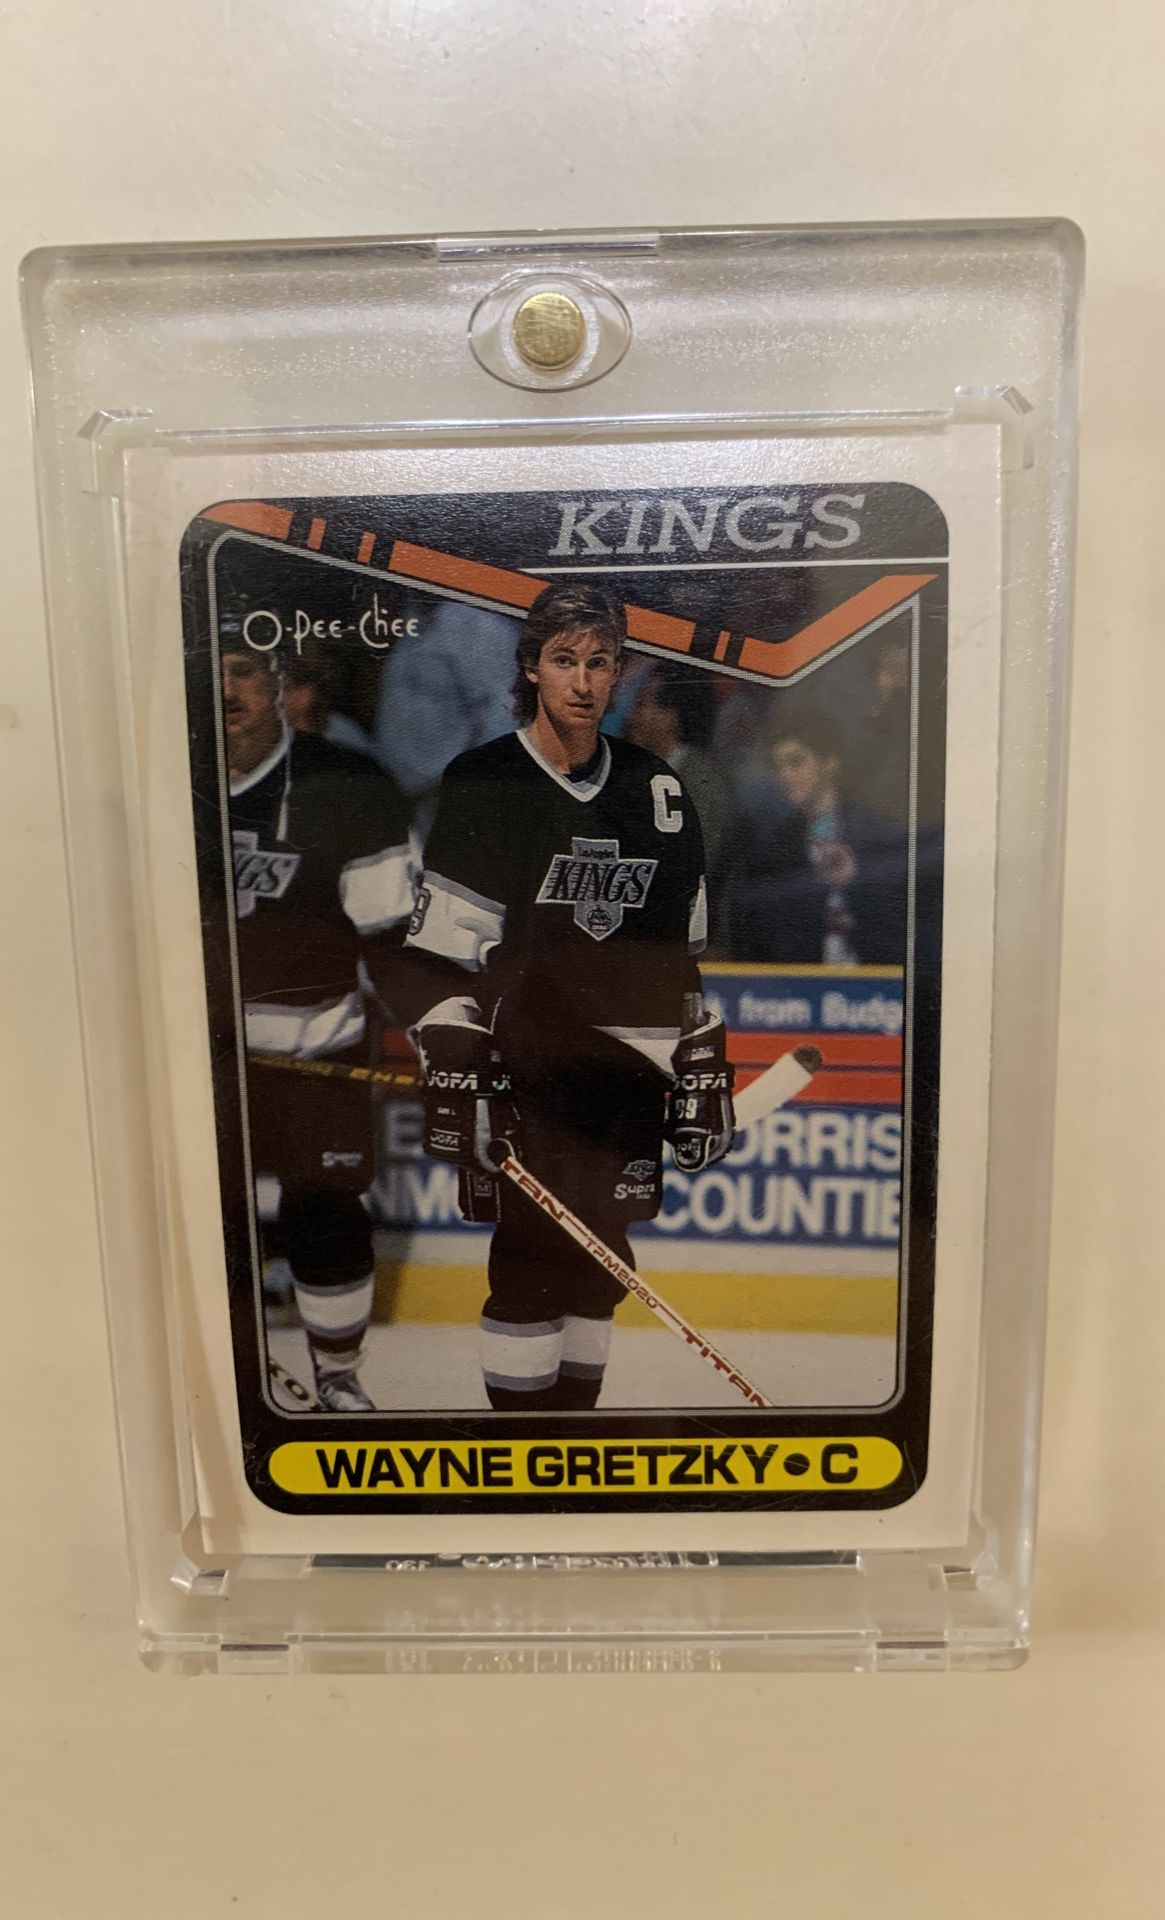 O-pee-chee 1990 Wayne Gretzky Hockey Card